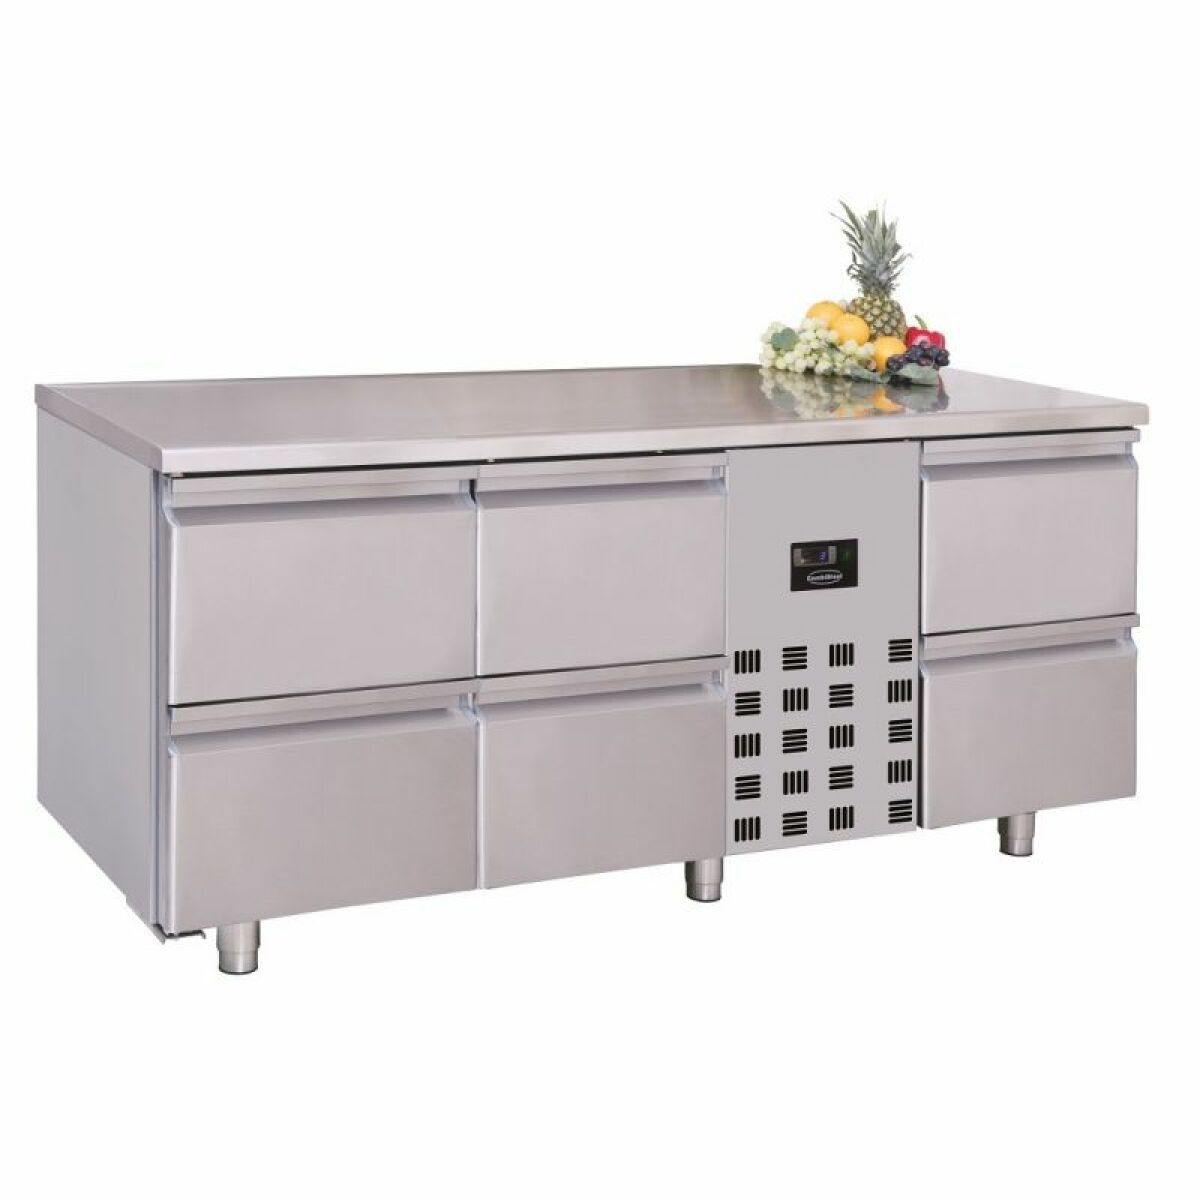 Réfrigérateur américain Combisteel Table Réfrigérée Positive Série 700 - 4 ou 6 Tiroirs - Combisteel - R290 - Acier inoxydable1785x700474 1785x700x850mm